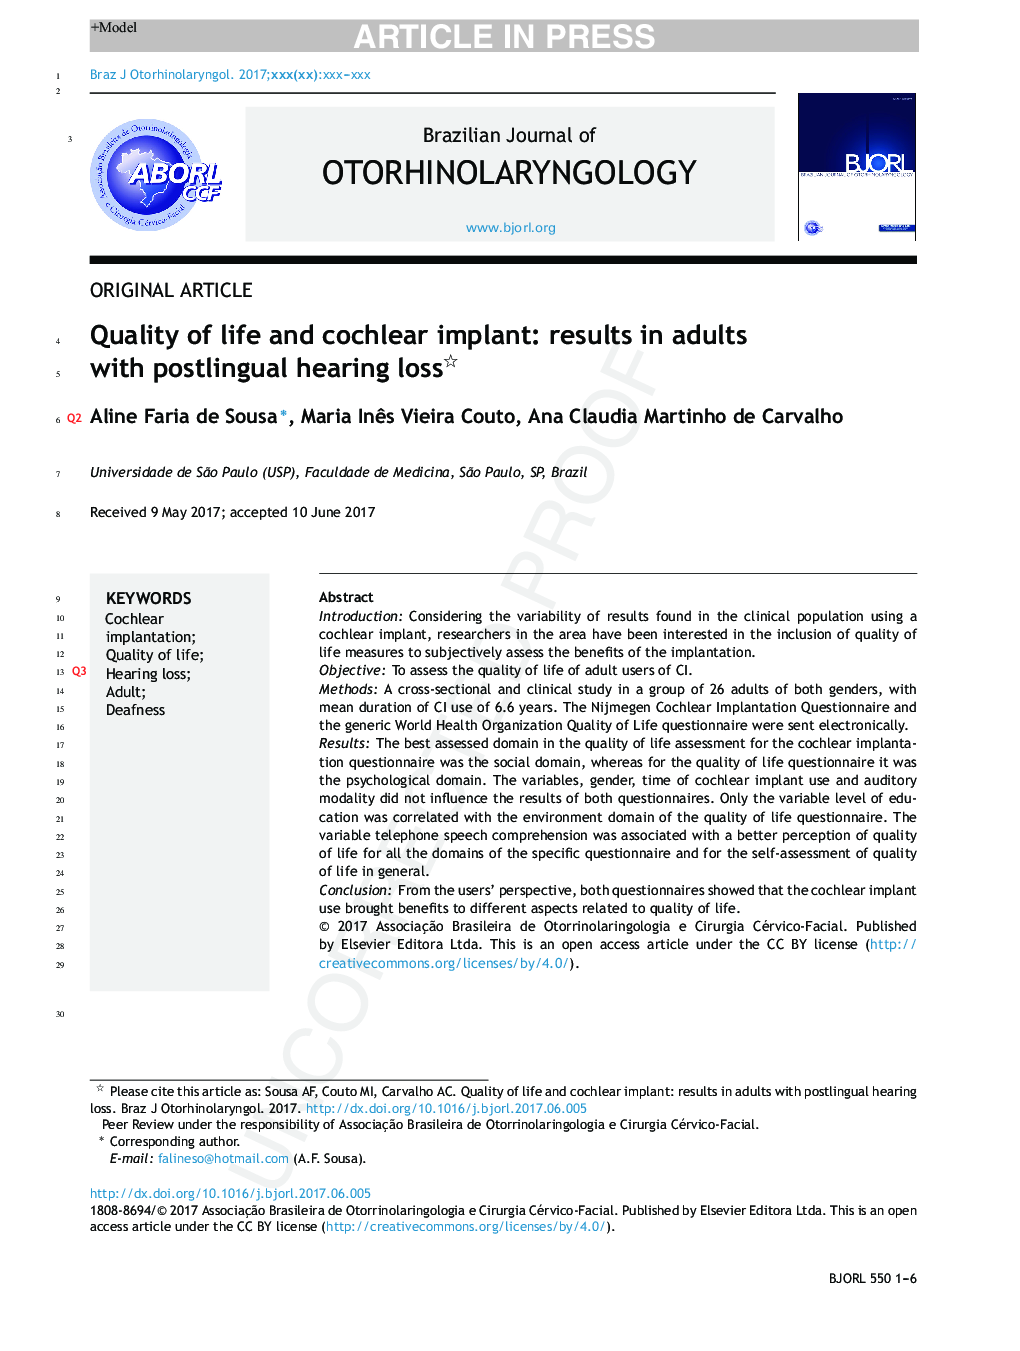 کیفیت زندگی و ایمپلنت کچلر: نتایج بالغانی در کاهش شنوایی پس از زایمان است 